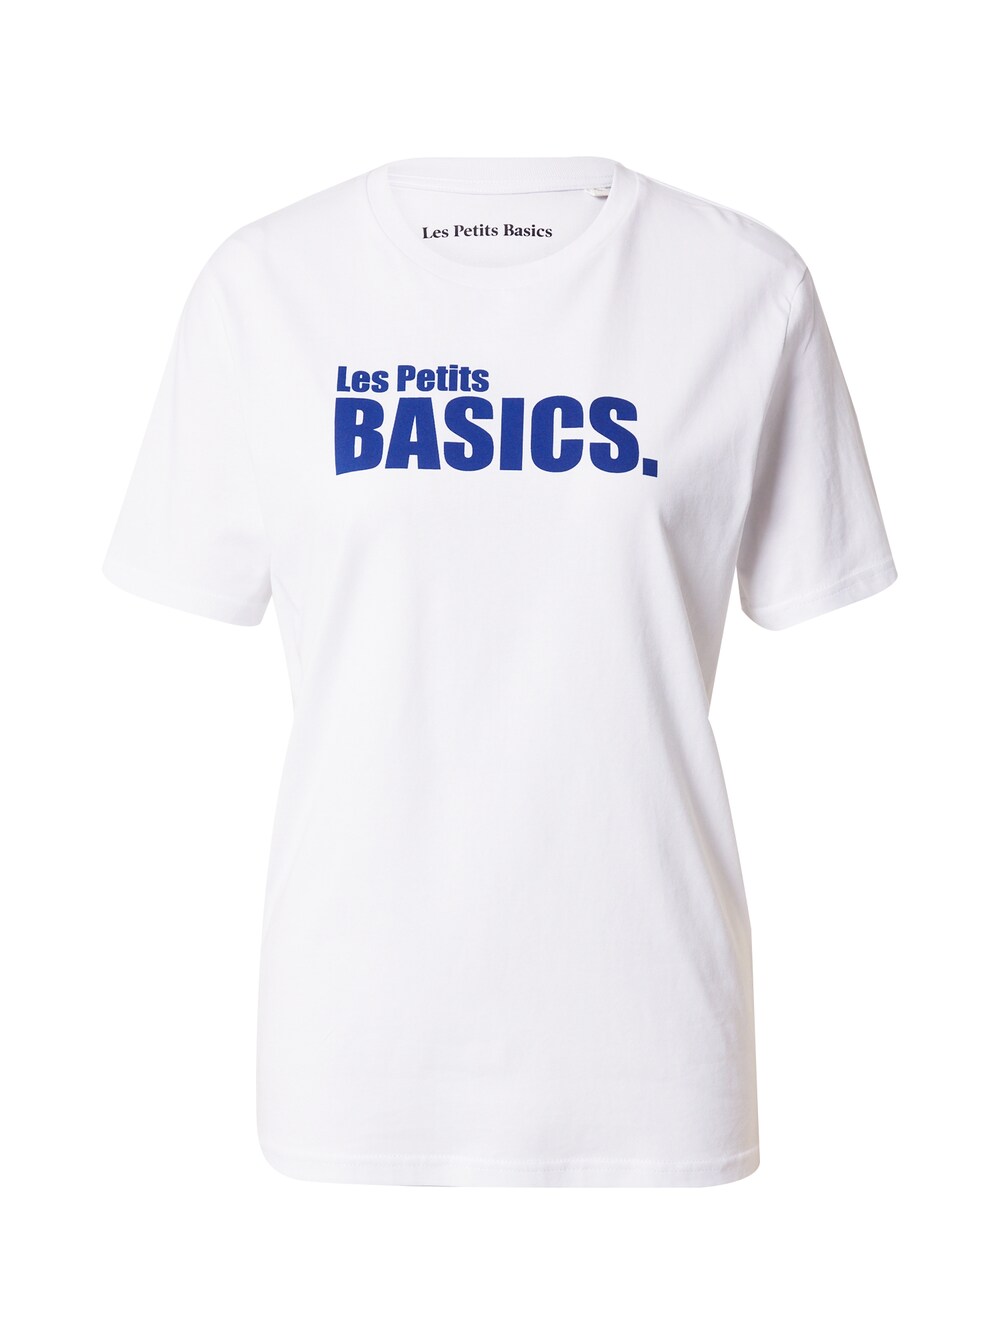 Рубашка Les Petits Basics, белый